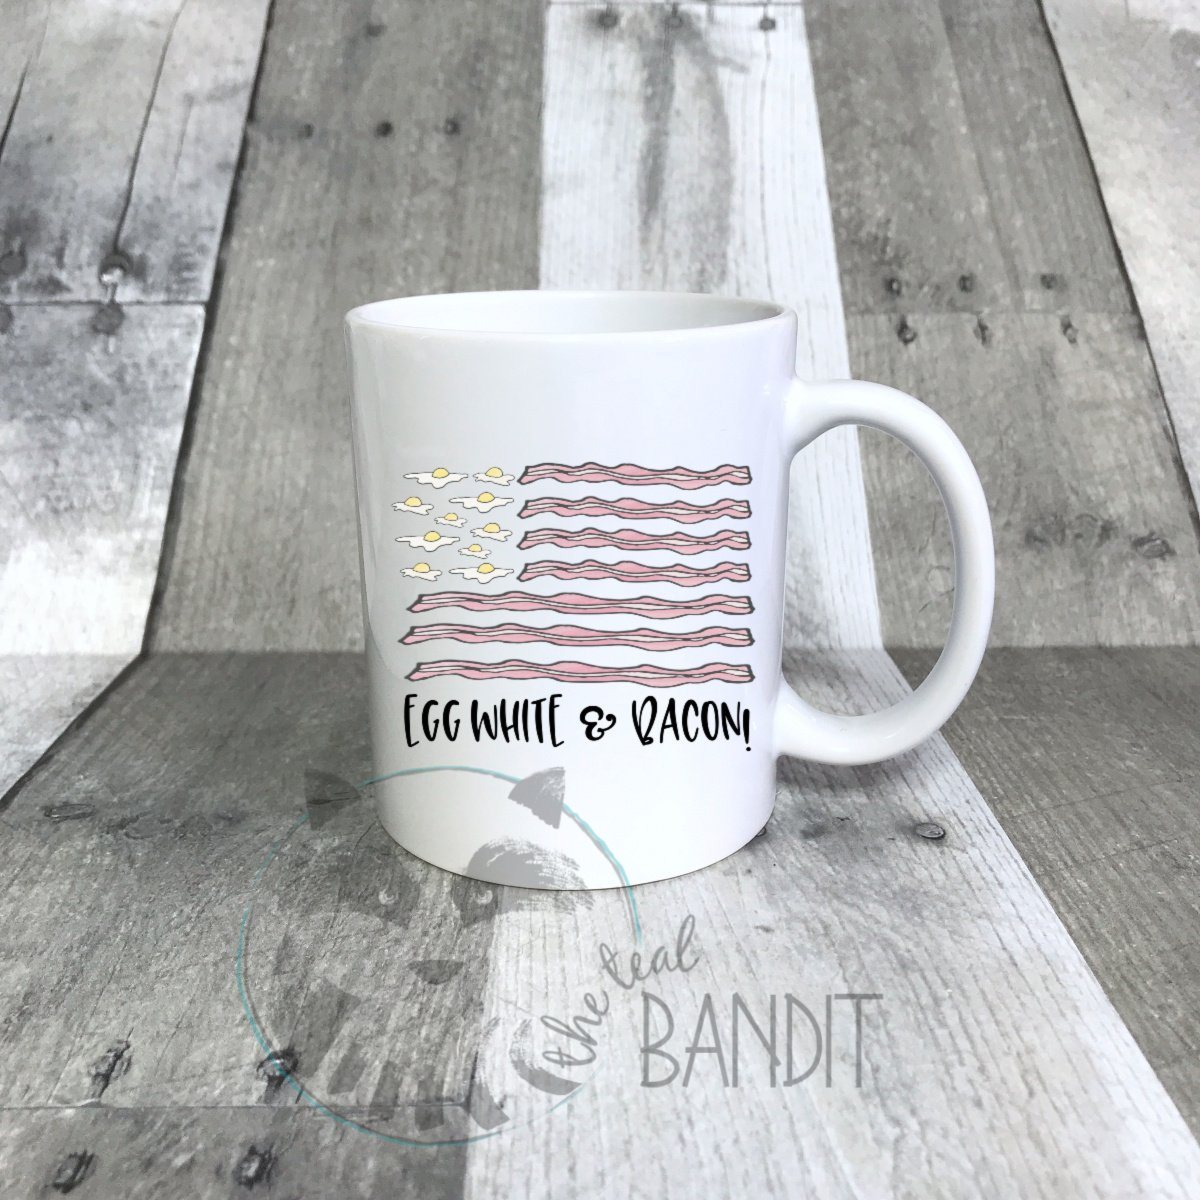 "Egg White and Bacon" mug mug The Teal Bandit 